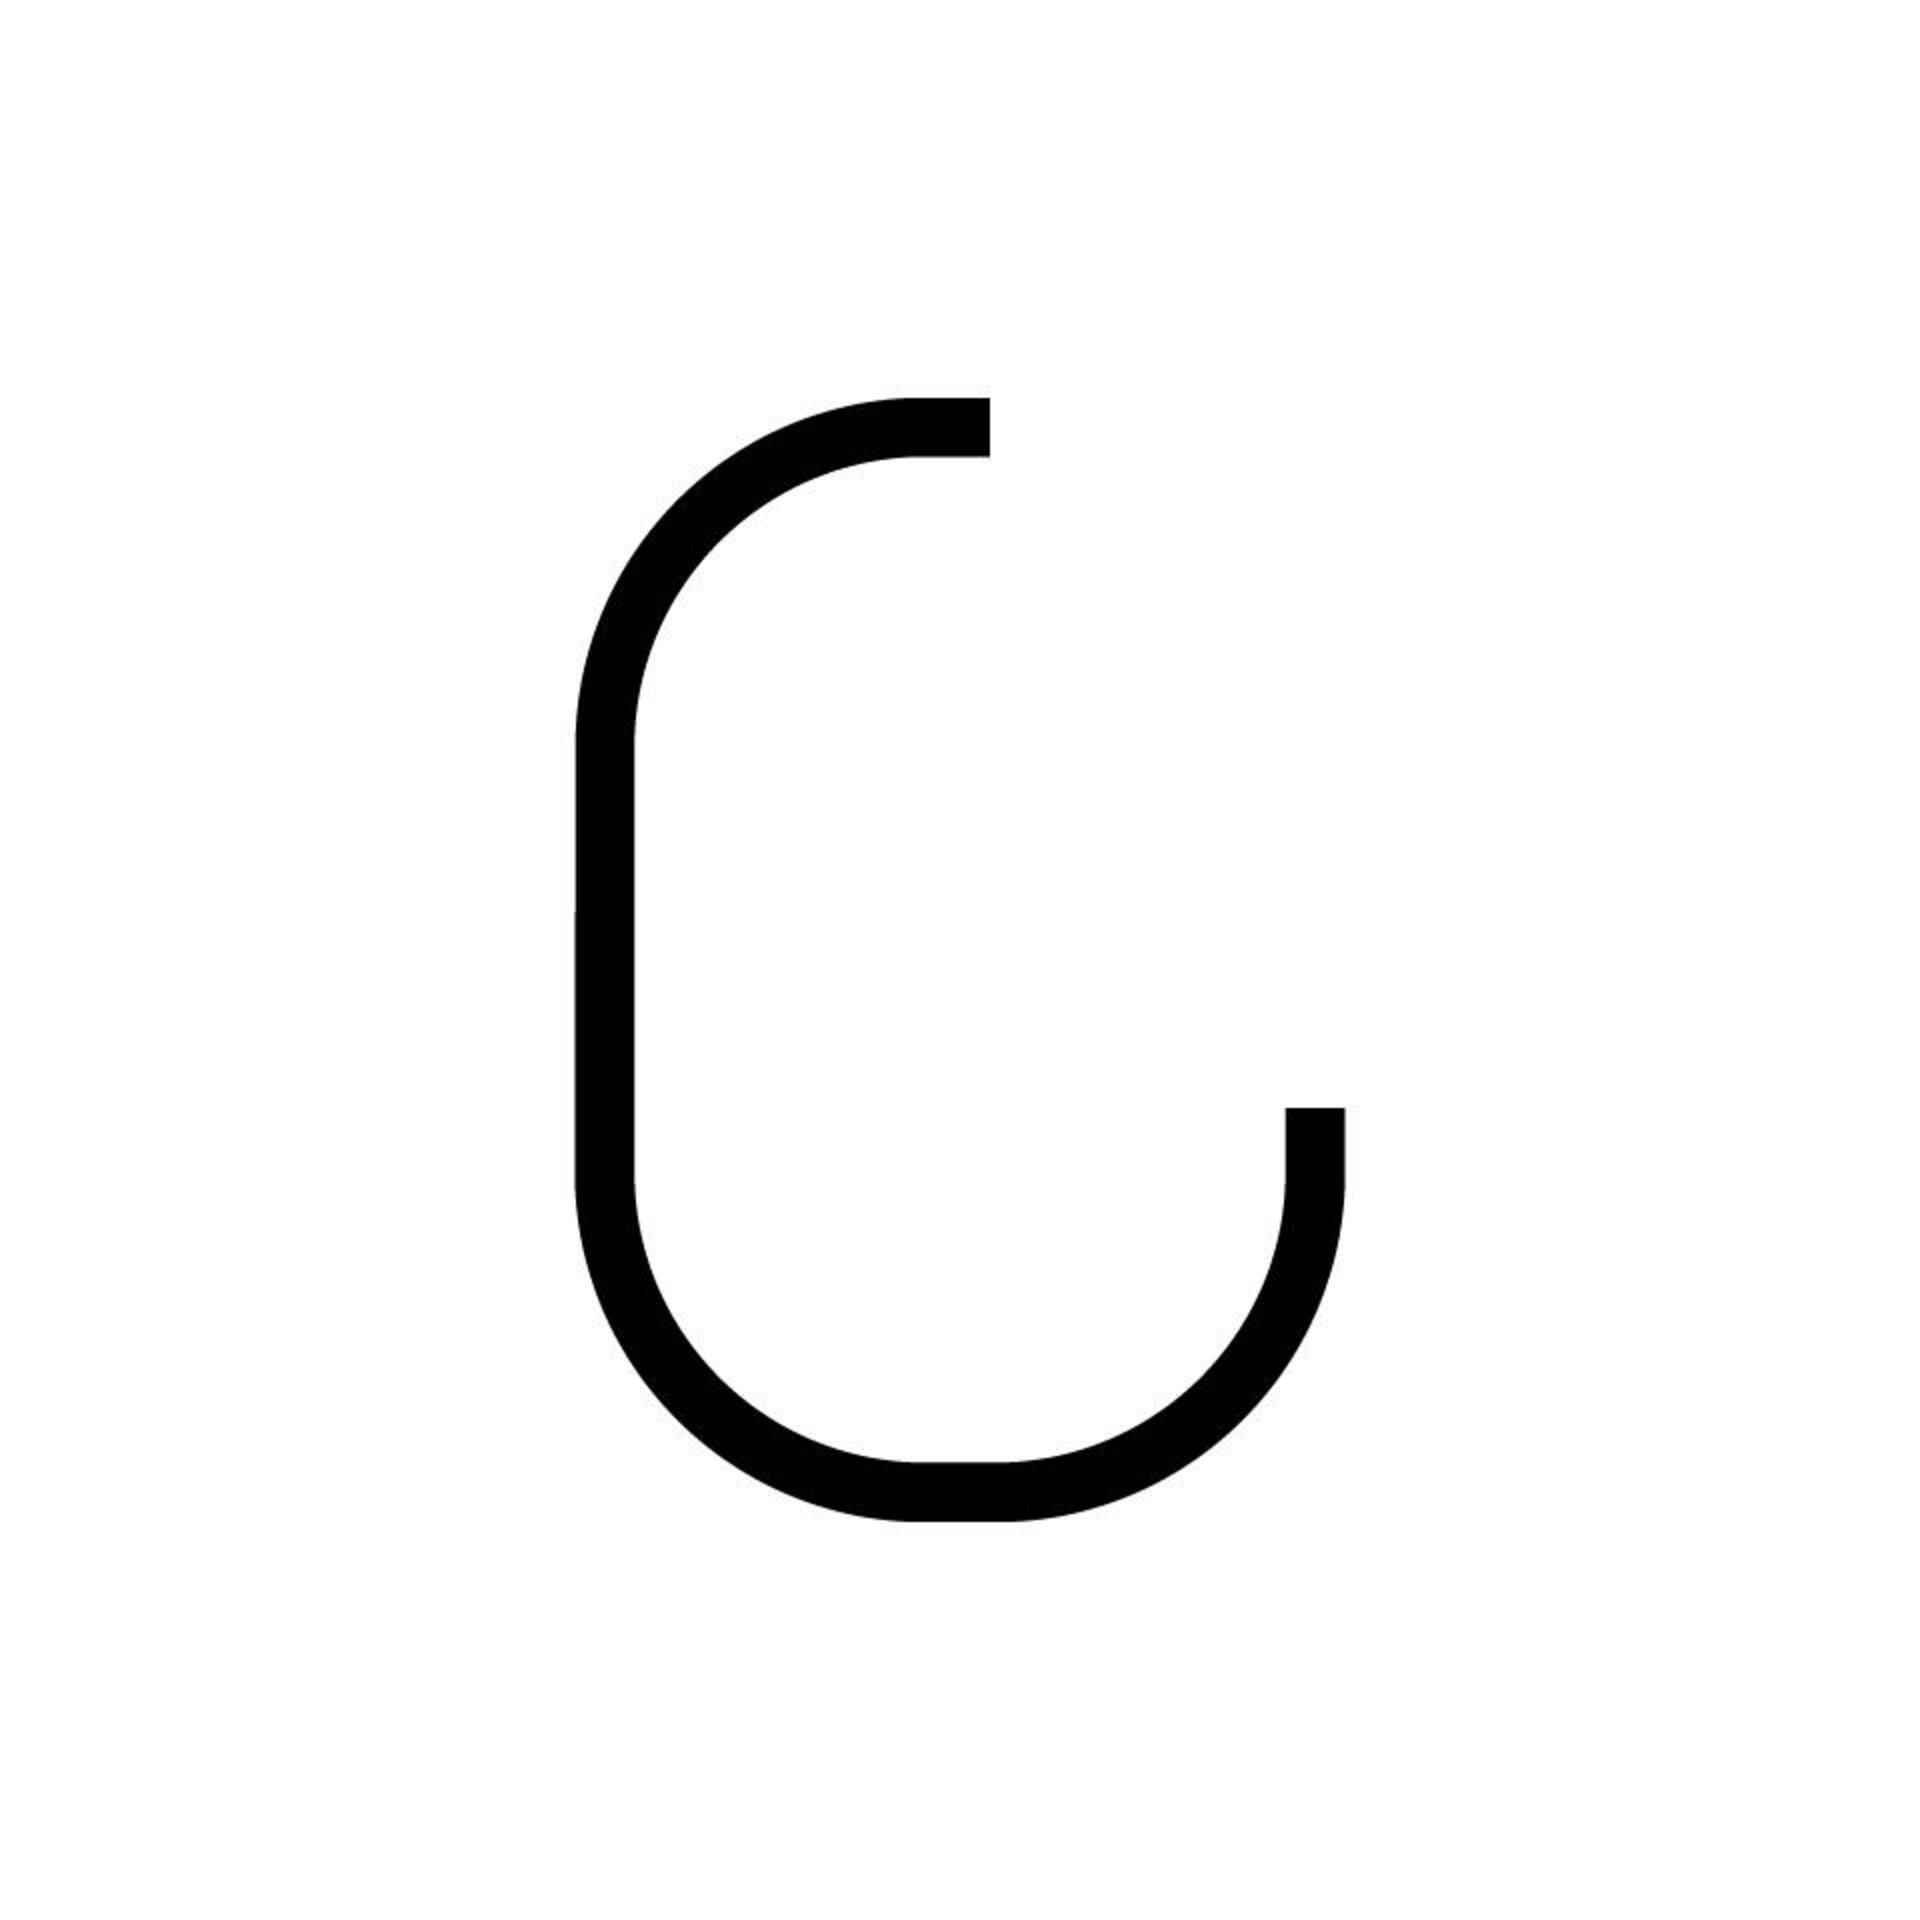 Artemide Alphabet of Light - velké písmeno C 1201C00A